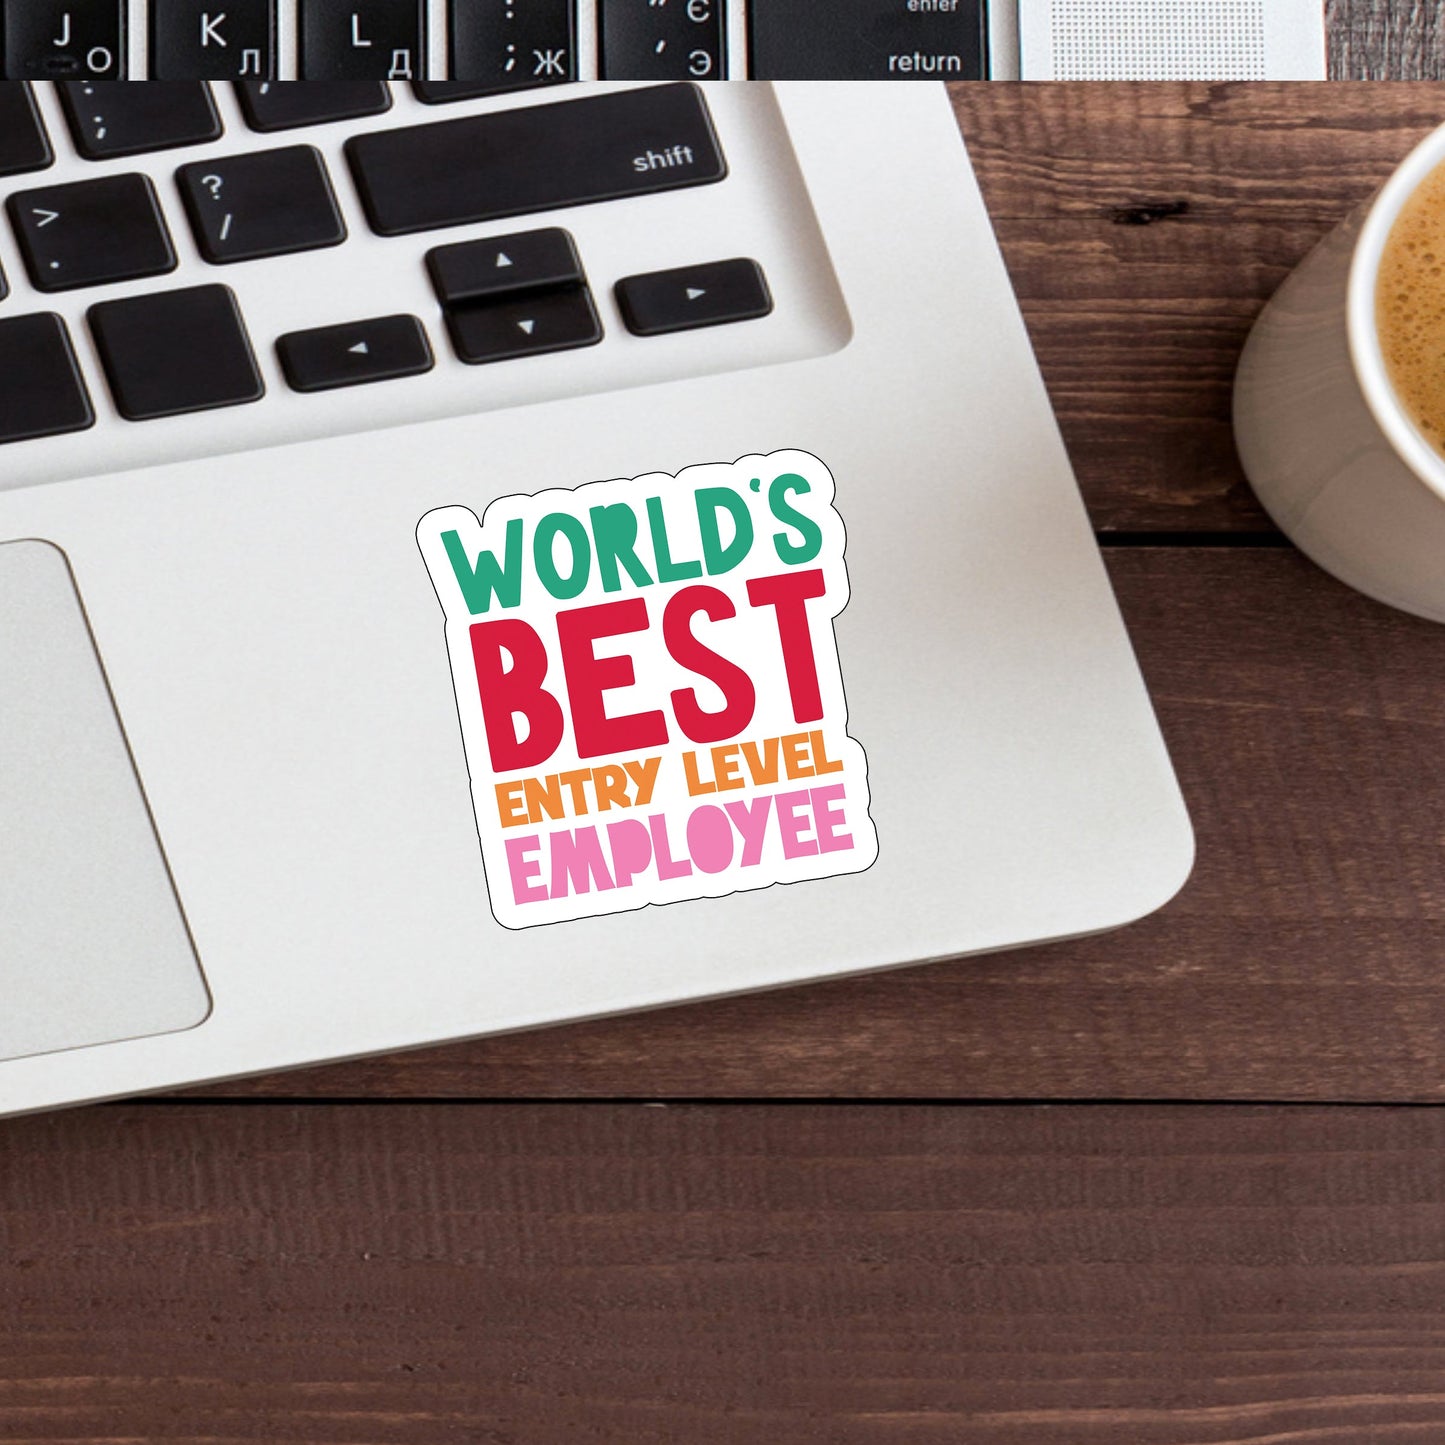 Worlds Best entry level employee  Sticker,  Vinyl sticker, laptop sticker, Tablet sticker